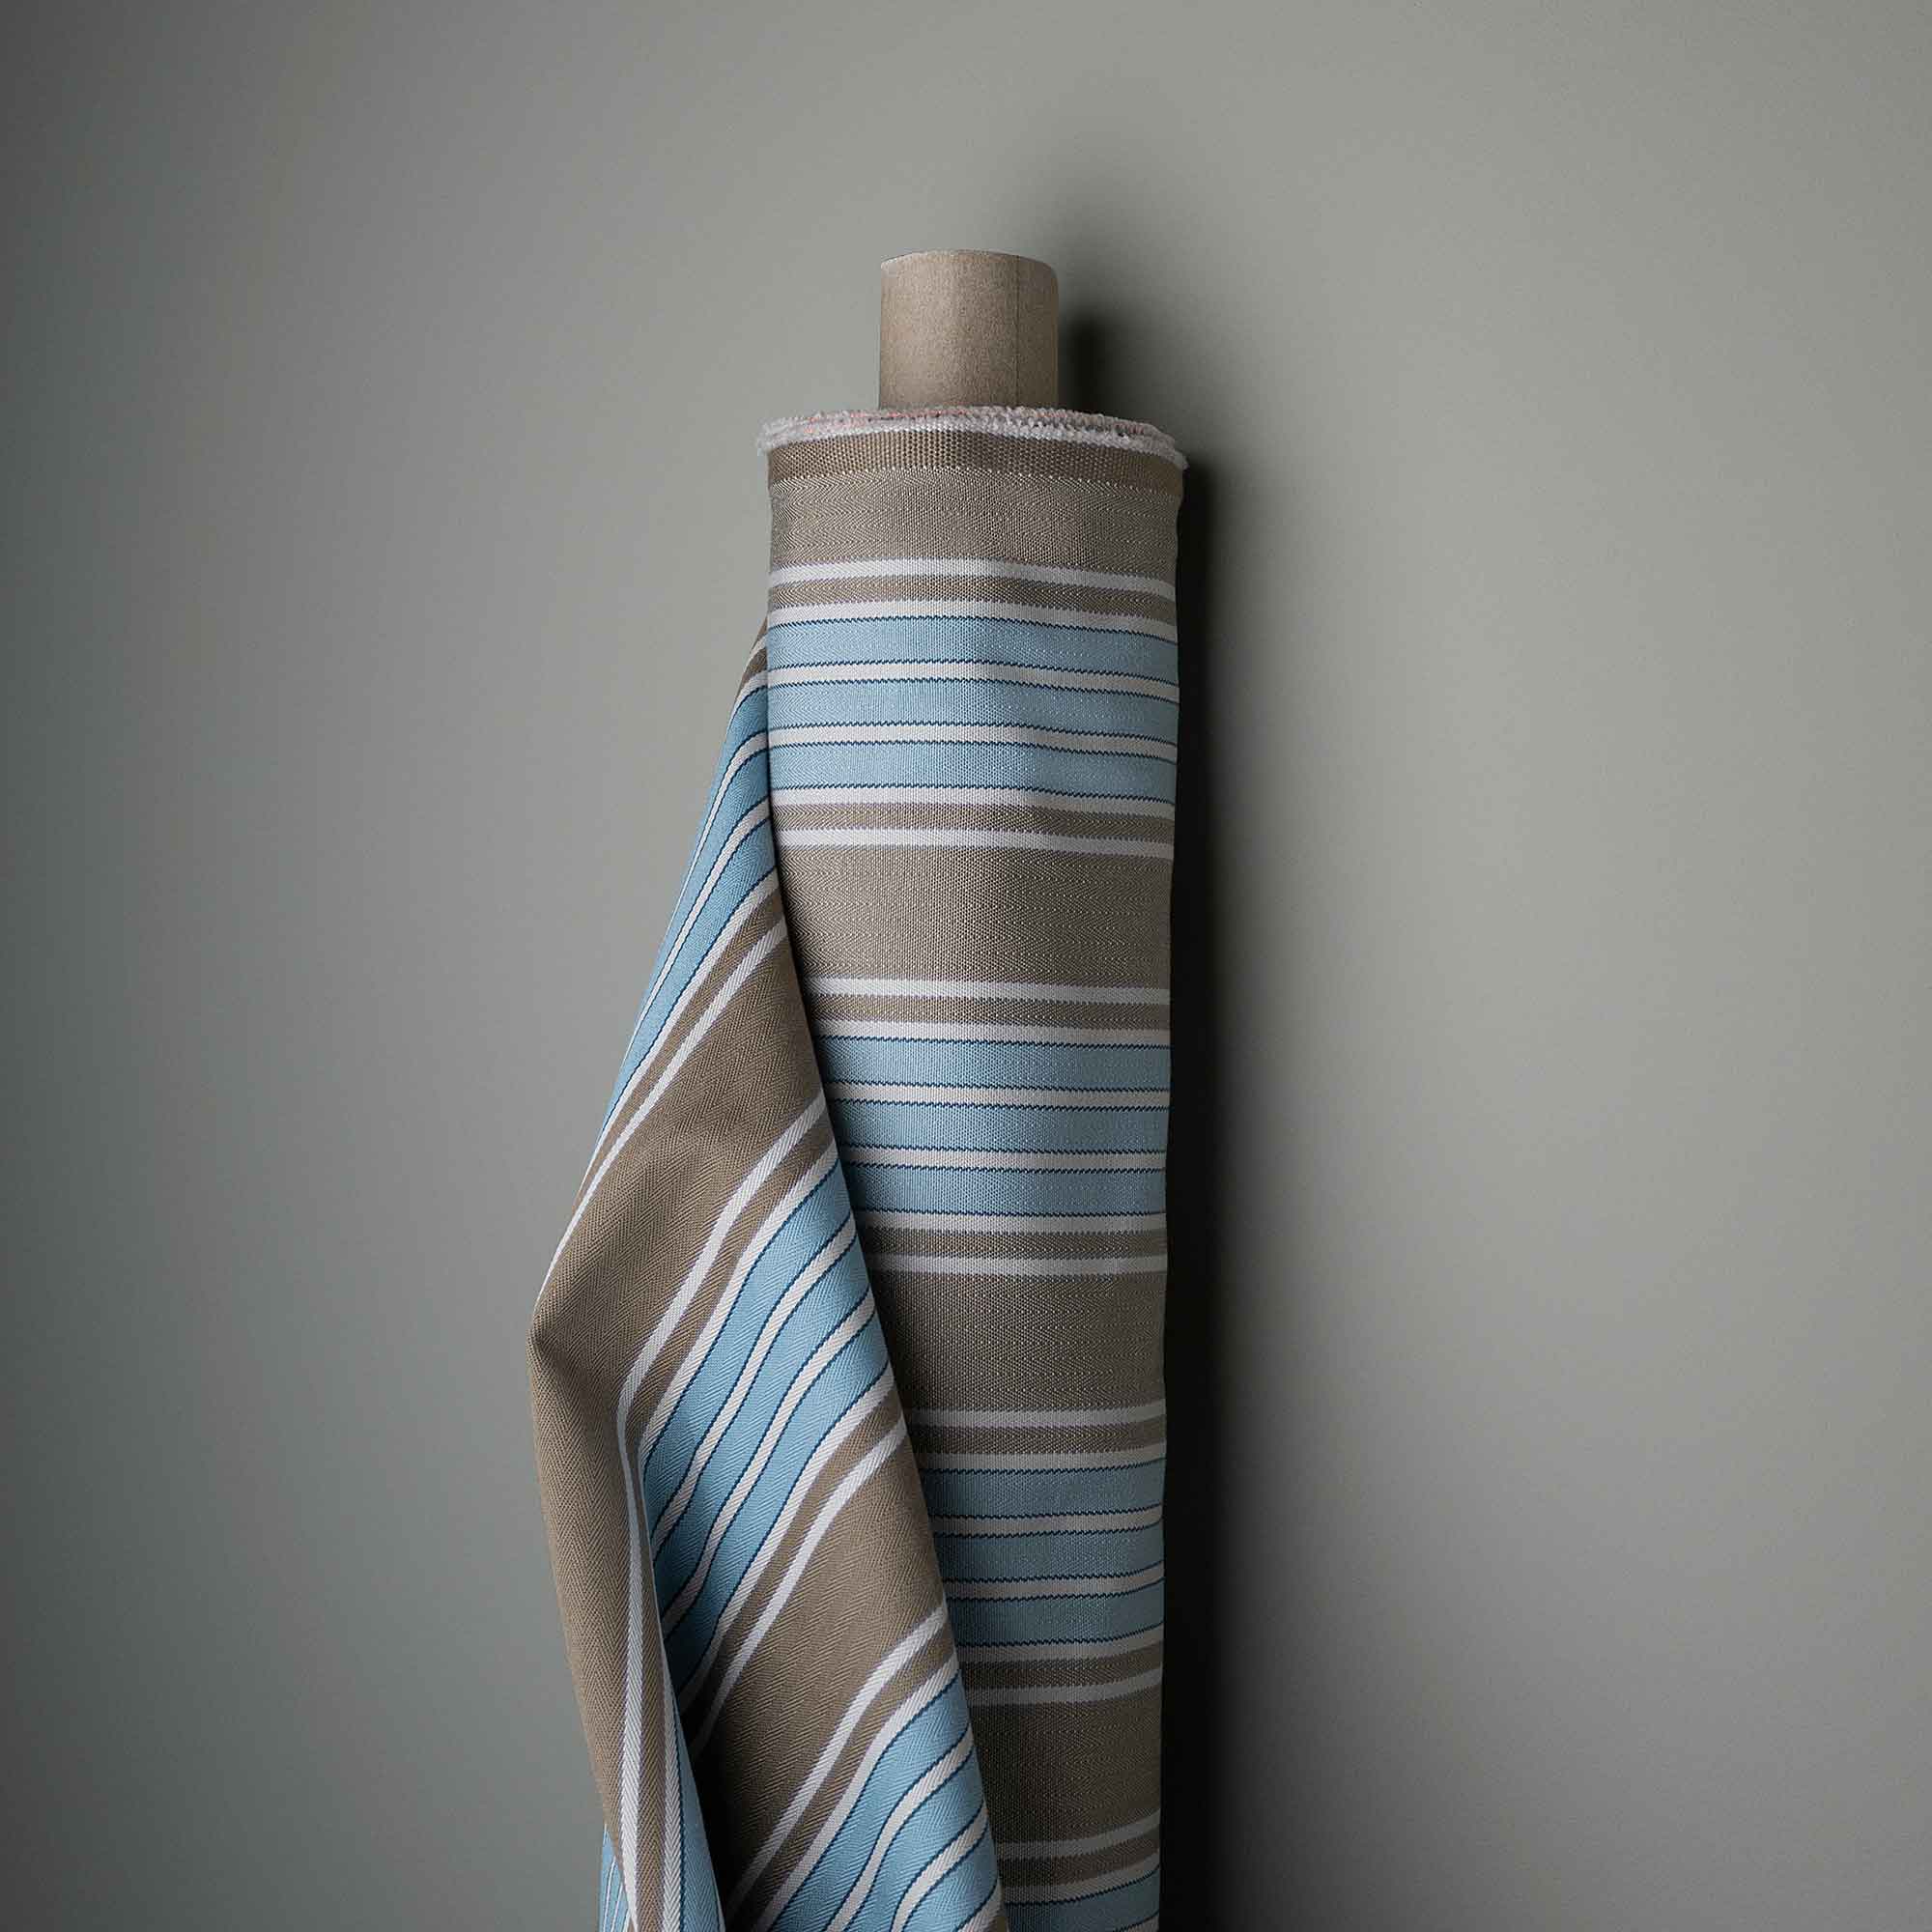  Curtain Call Armchair in Regatta Cotton, Blue 